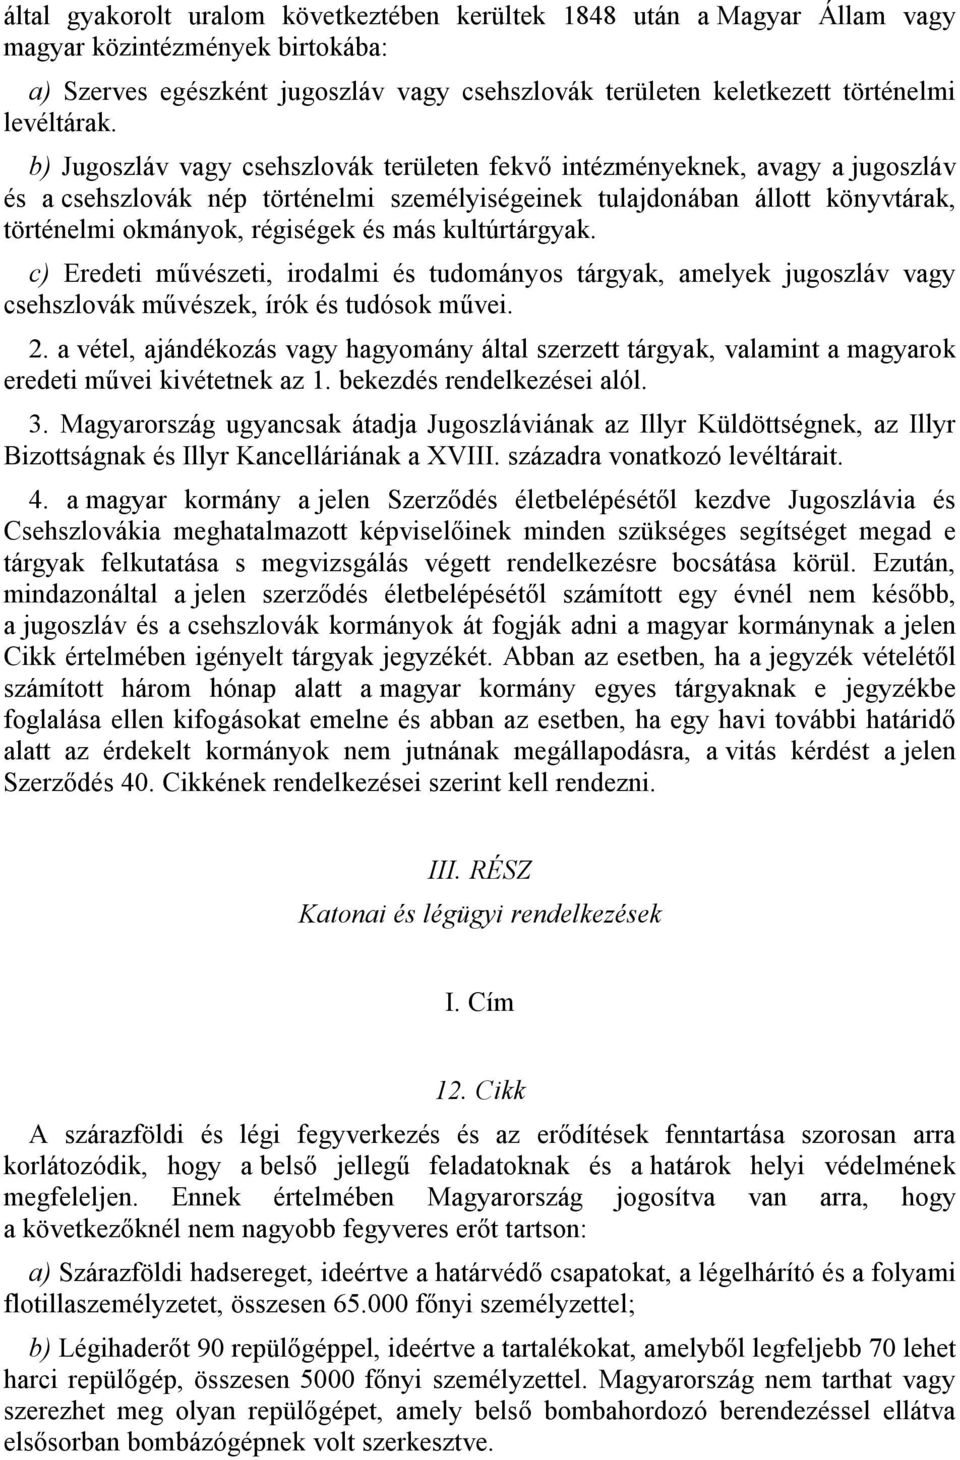 b) Jugoszláv vagy csehszlovák területen fekvő intézményeknek, avagy a jugoszláv és a csehszlovák nép történelmi személyiségeinek tulajdonában állott könyvtárak, történelmi okmányok, régiségek és más